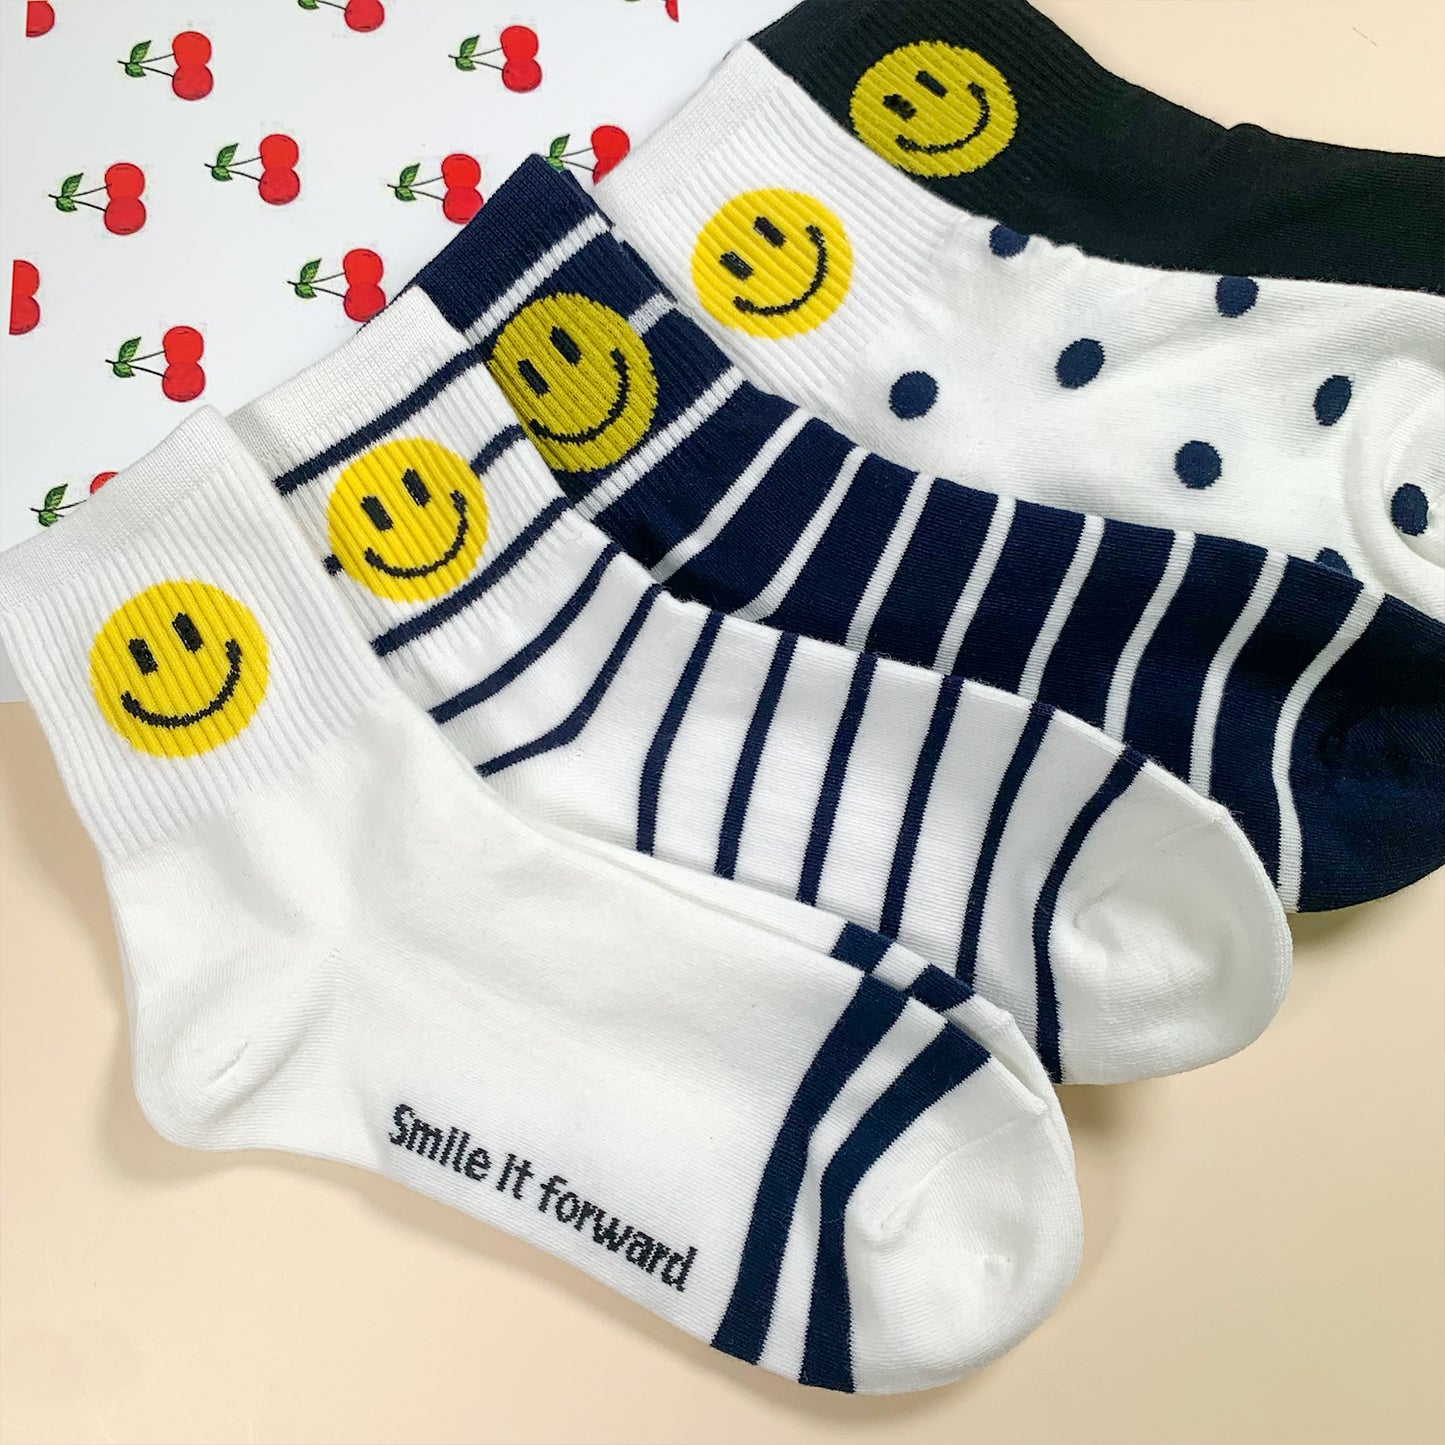 Women's Crew Happy Smile Socks